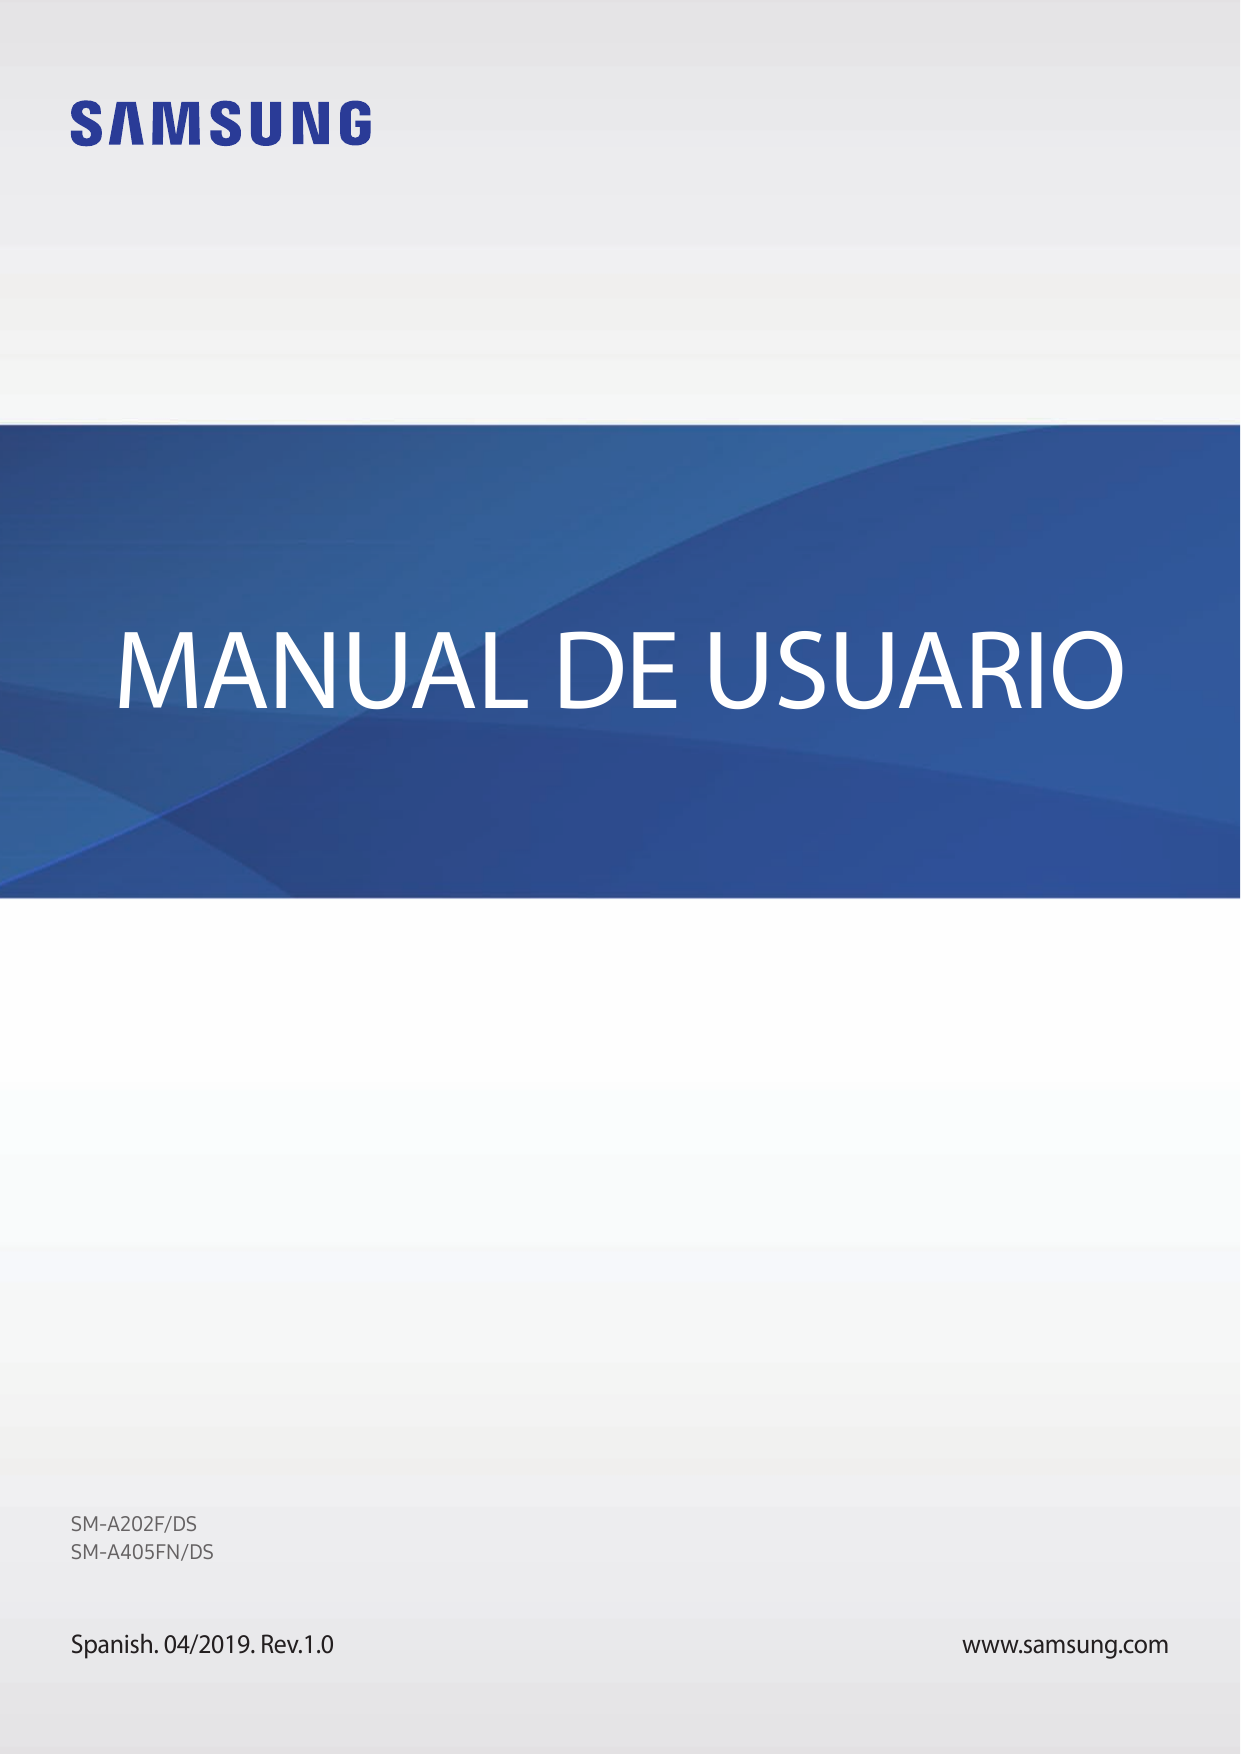 MANUAL DE USUARIOSM-A202F/DSSM-A405FN/DSSpanish. 04/2019. Rev.1.0www.samsung.com